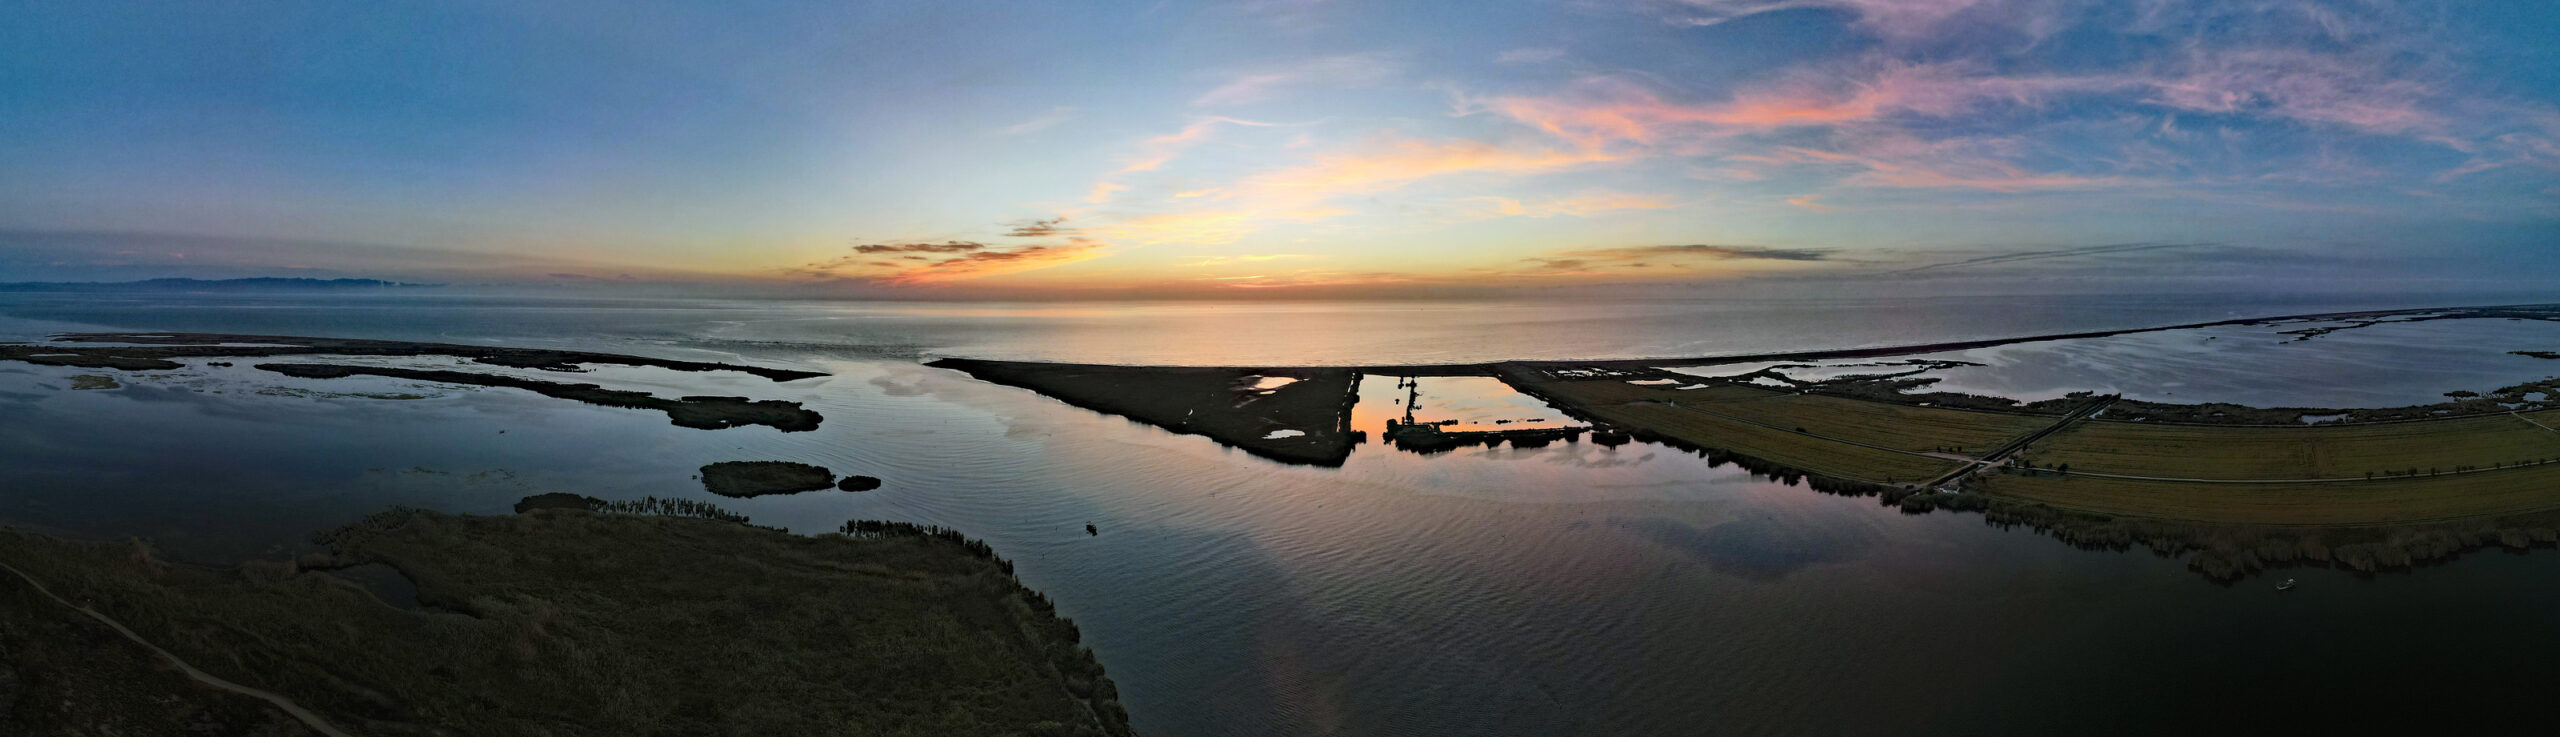 Delta Panorama scaled Angelurlaub Spanien